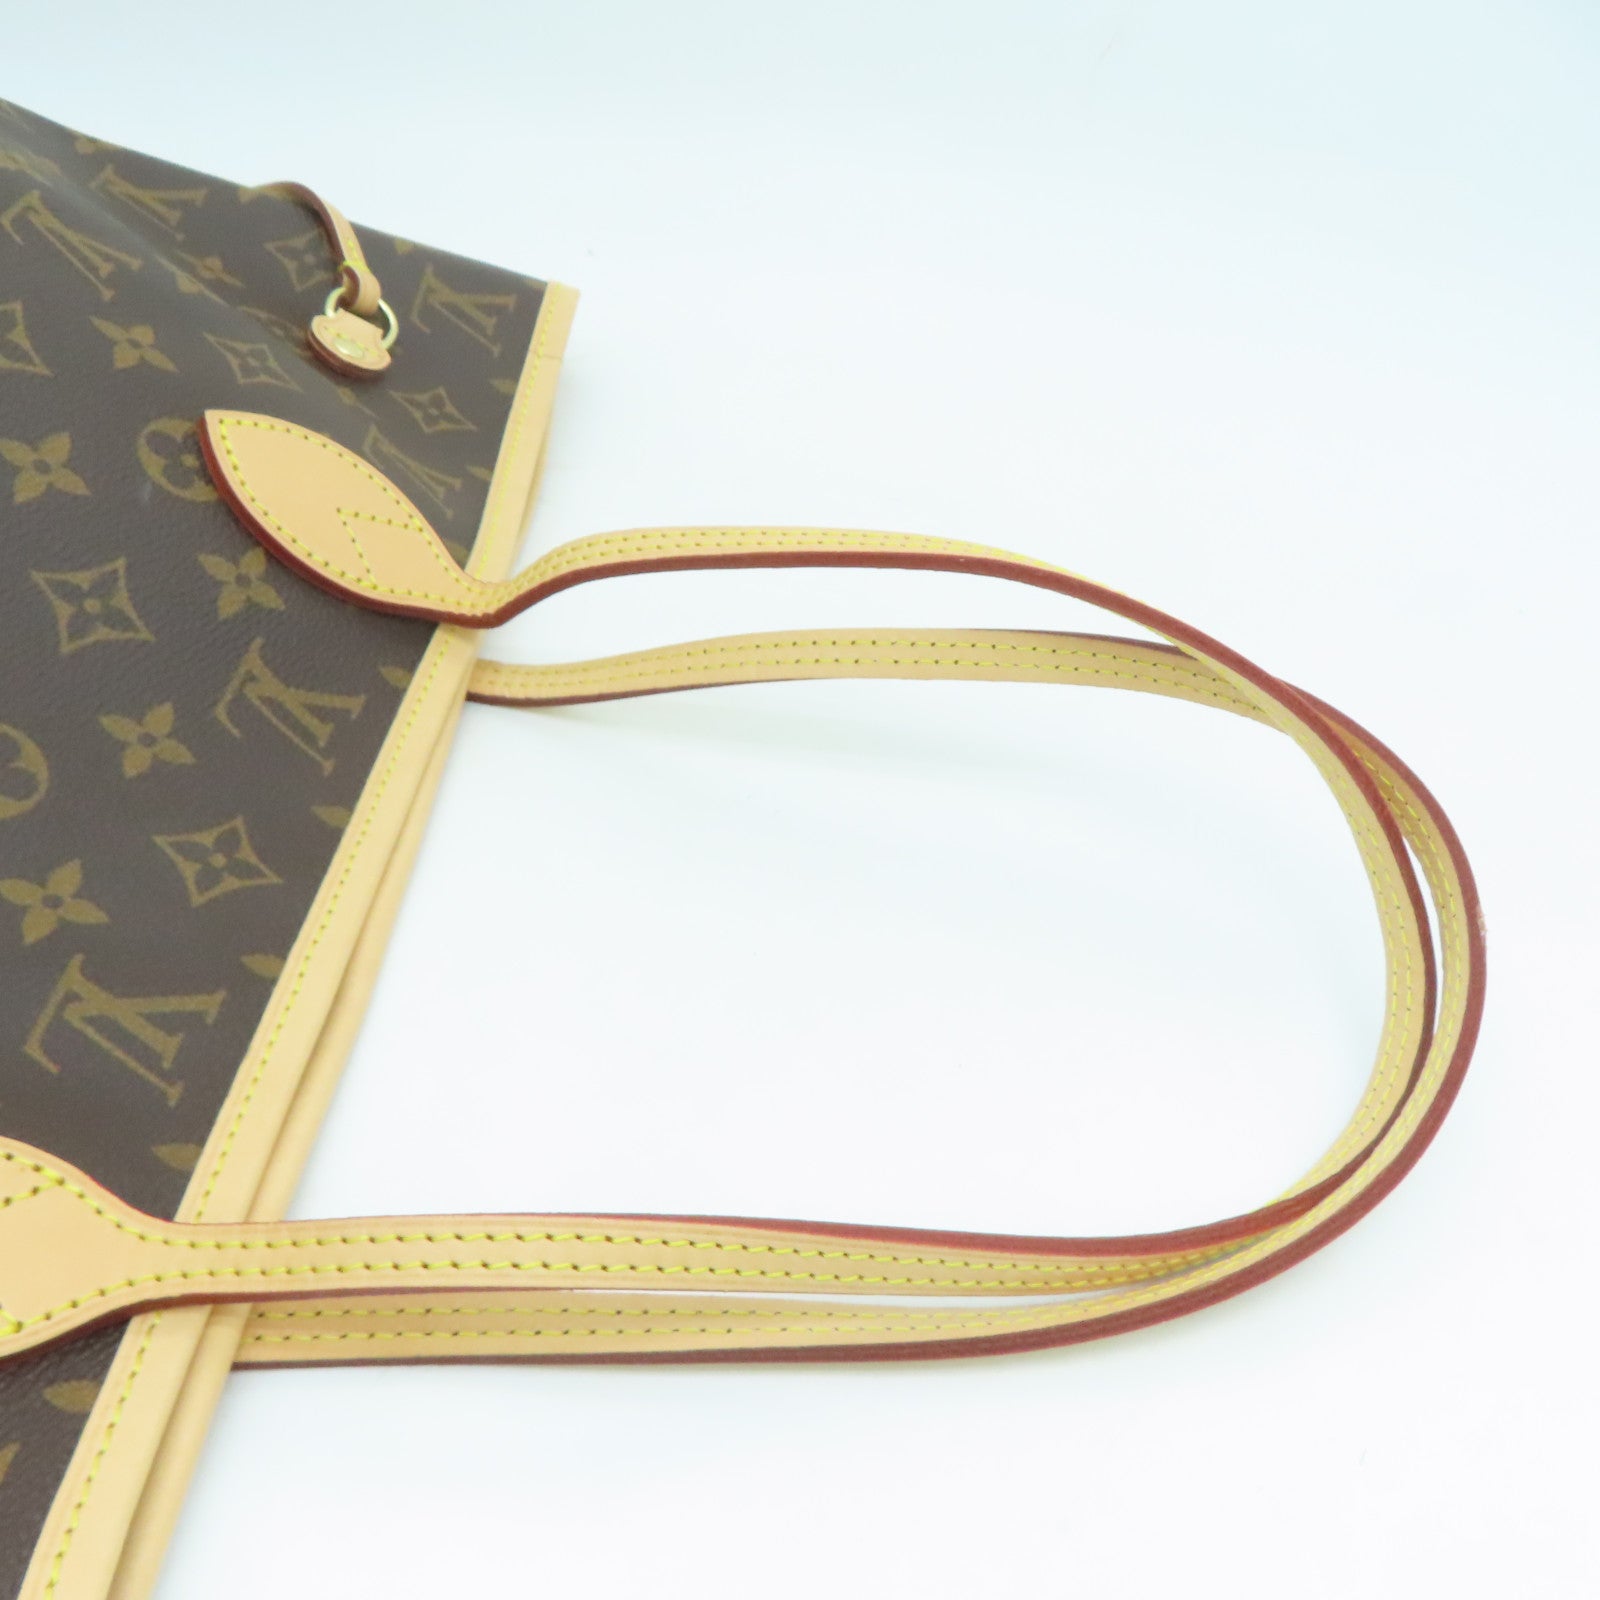 LOUIS VUITTON Monogram Neverfull MM gold buckle shoulder bag / hand ba –  Brand Off Hong Kong Online Store